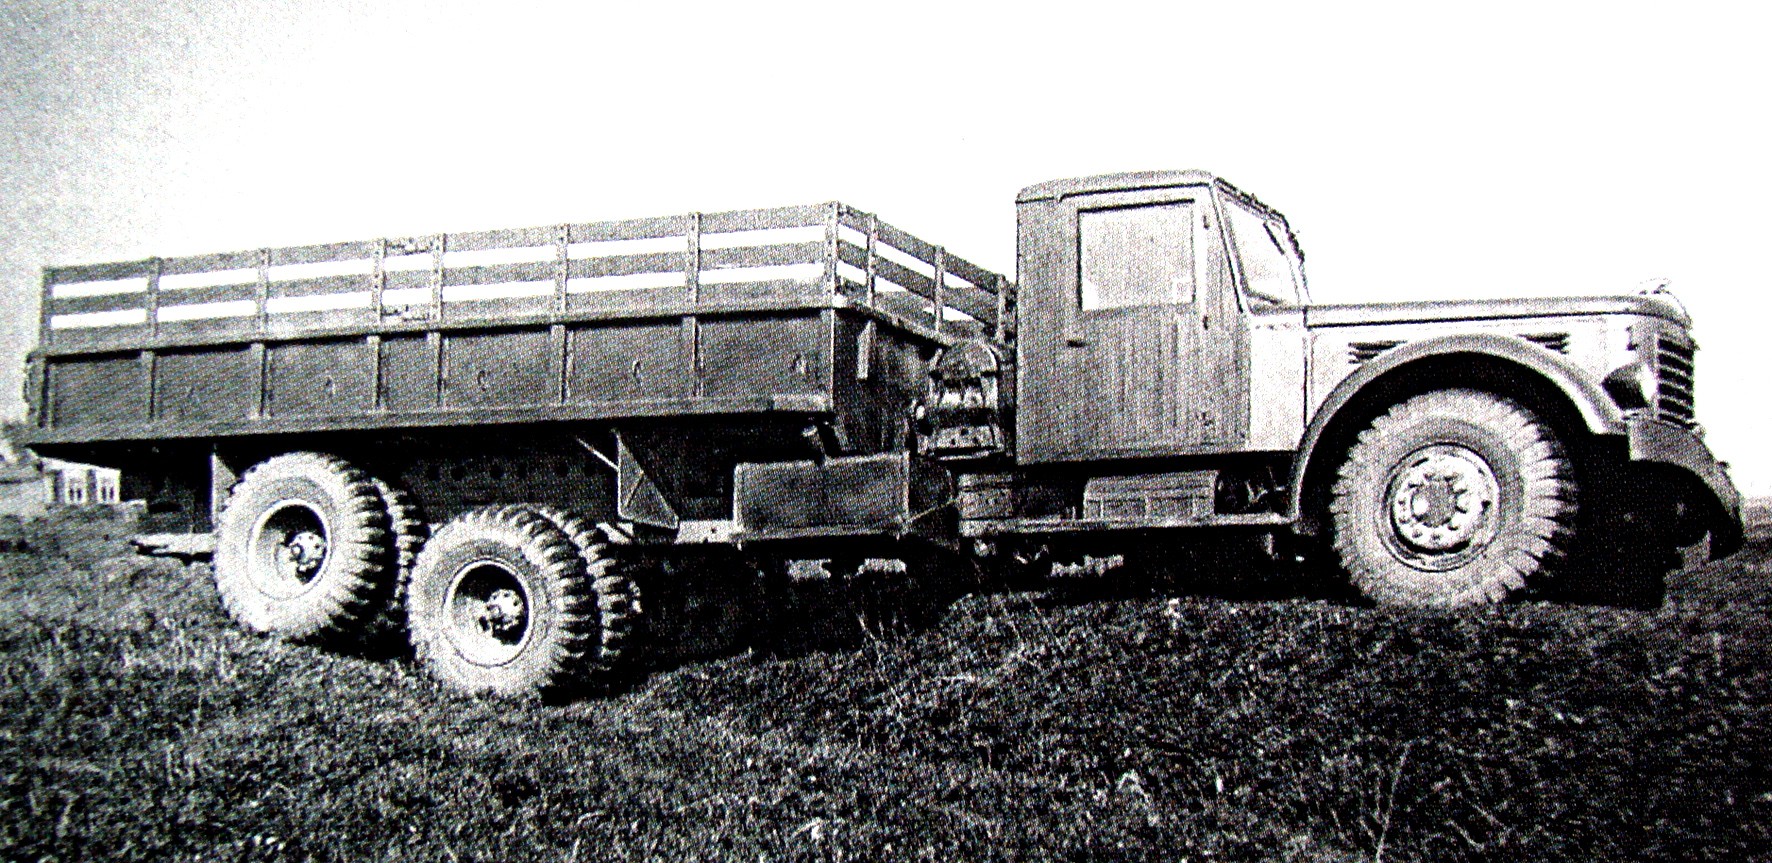 ЯАЗ, КрАЗ и двухтактные дизели: послевоенная тяжёлая автотехника для Советской армии